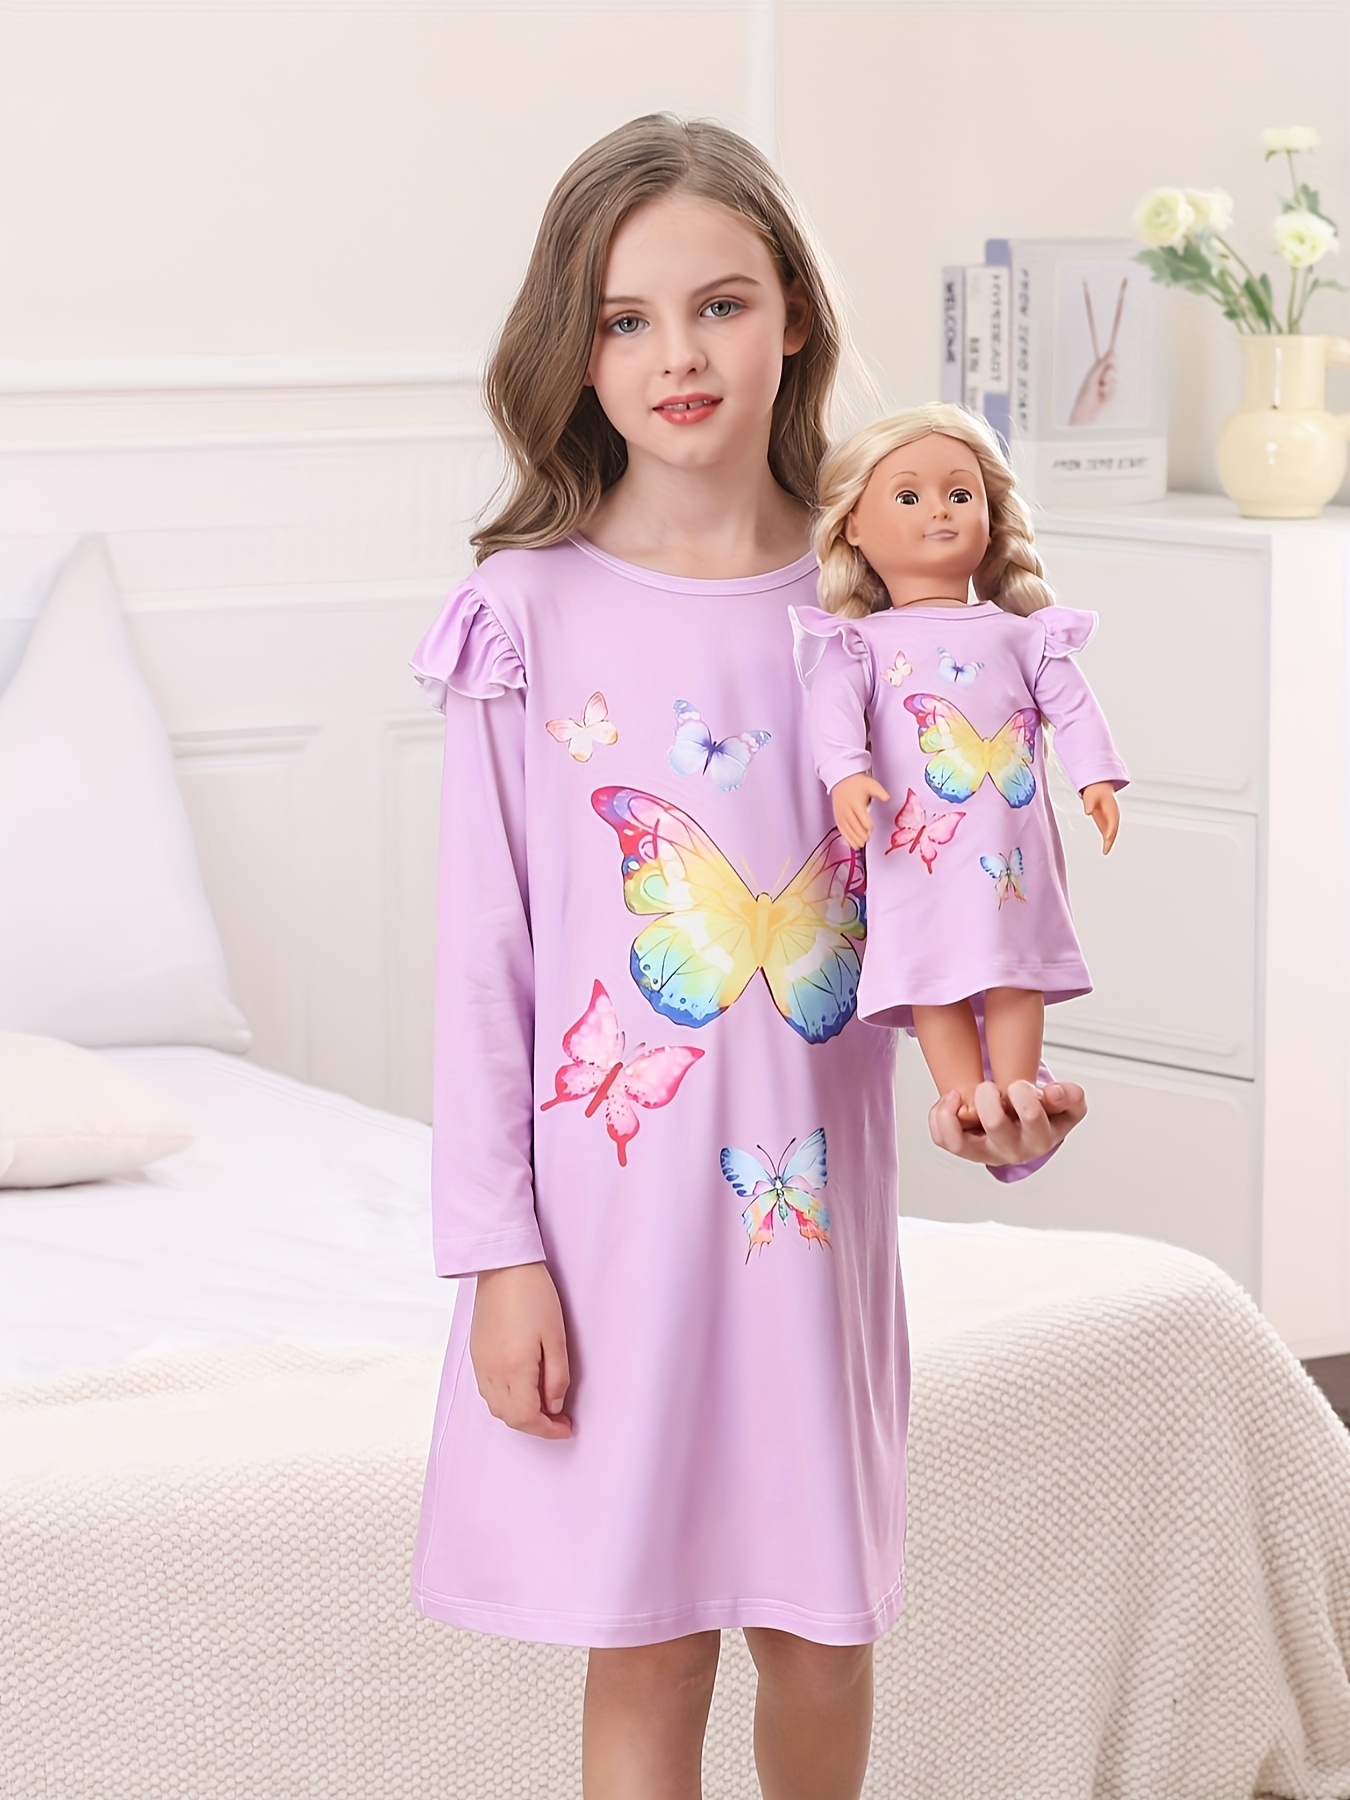 Pyjama licorne rose fille